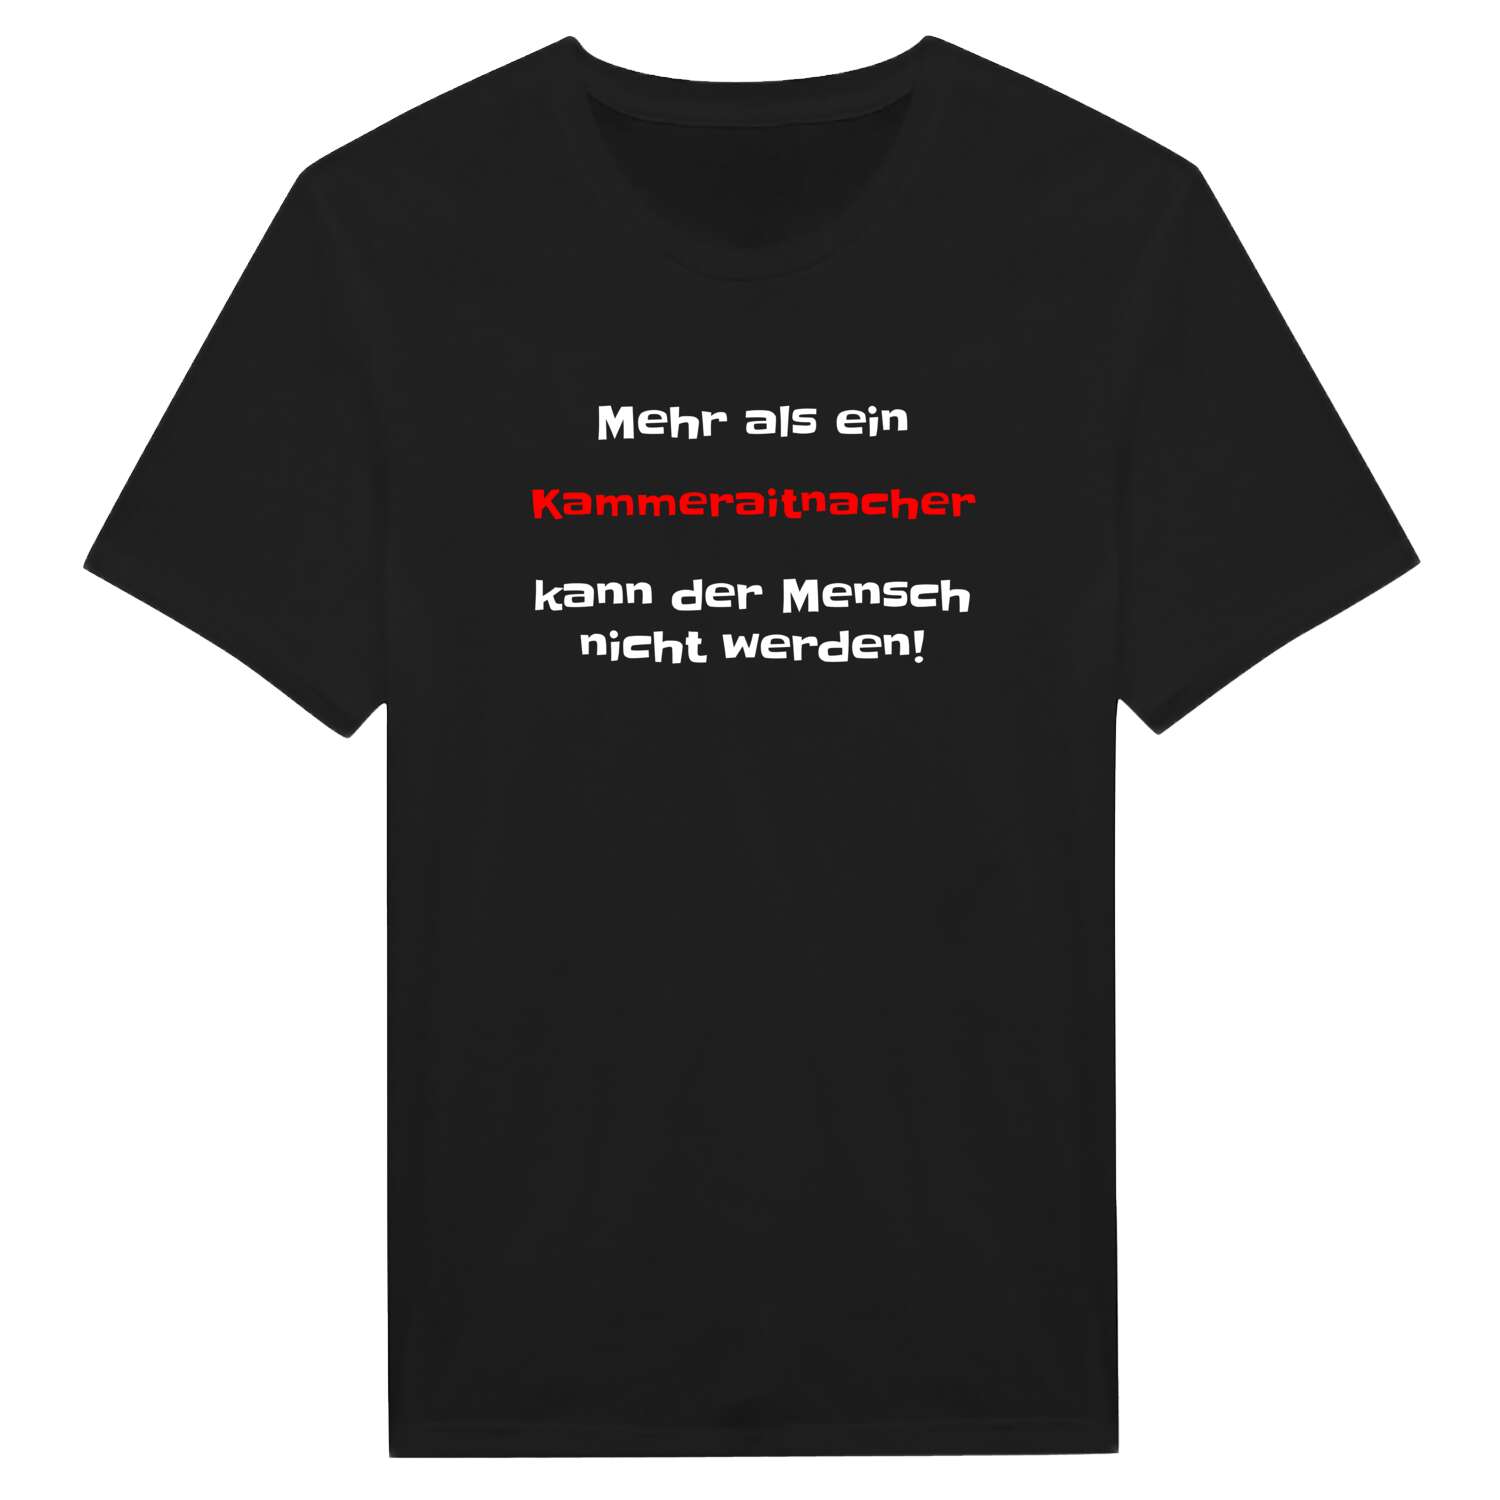 Kammeraitnach T-Shirt »Mehr als ein«